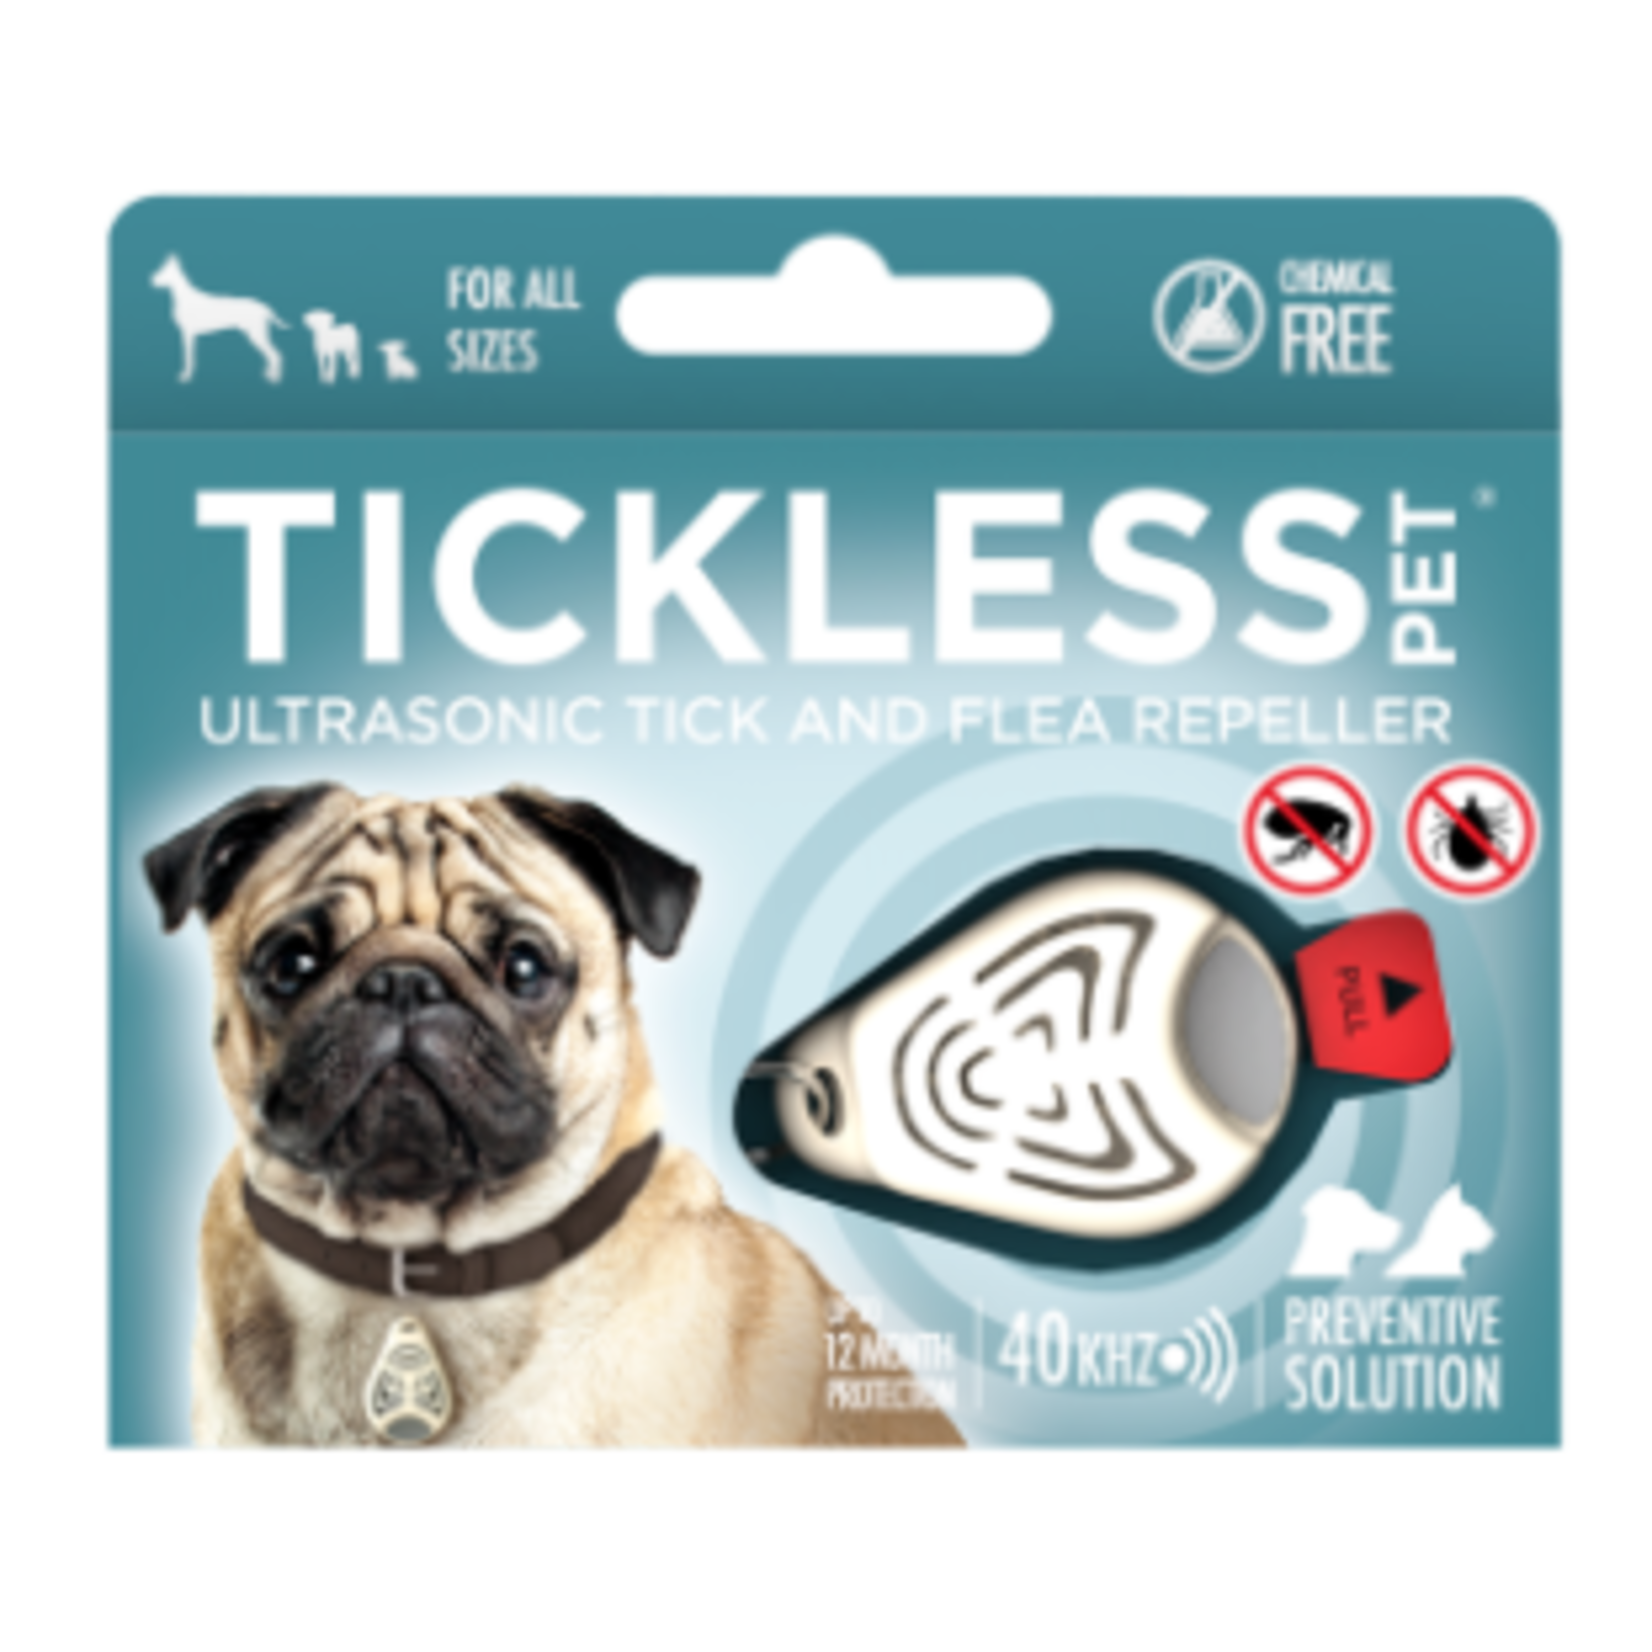 Tickless Le classic pour animal de compagnie - Répulsif à ultrasons contre les tiques et les puces